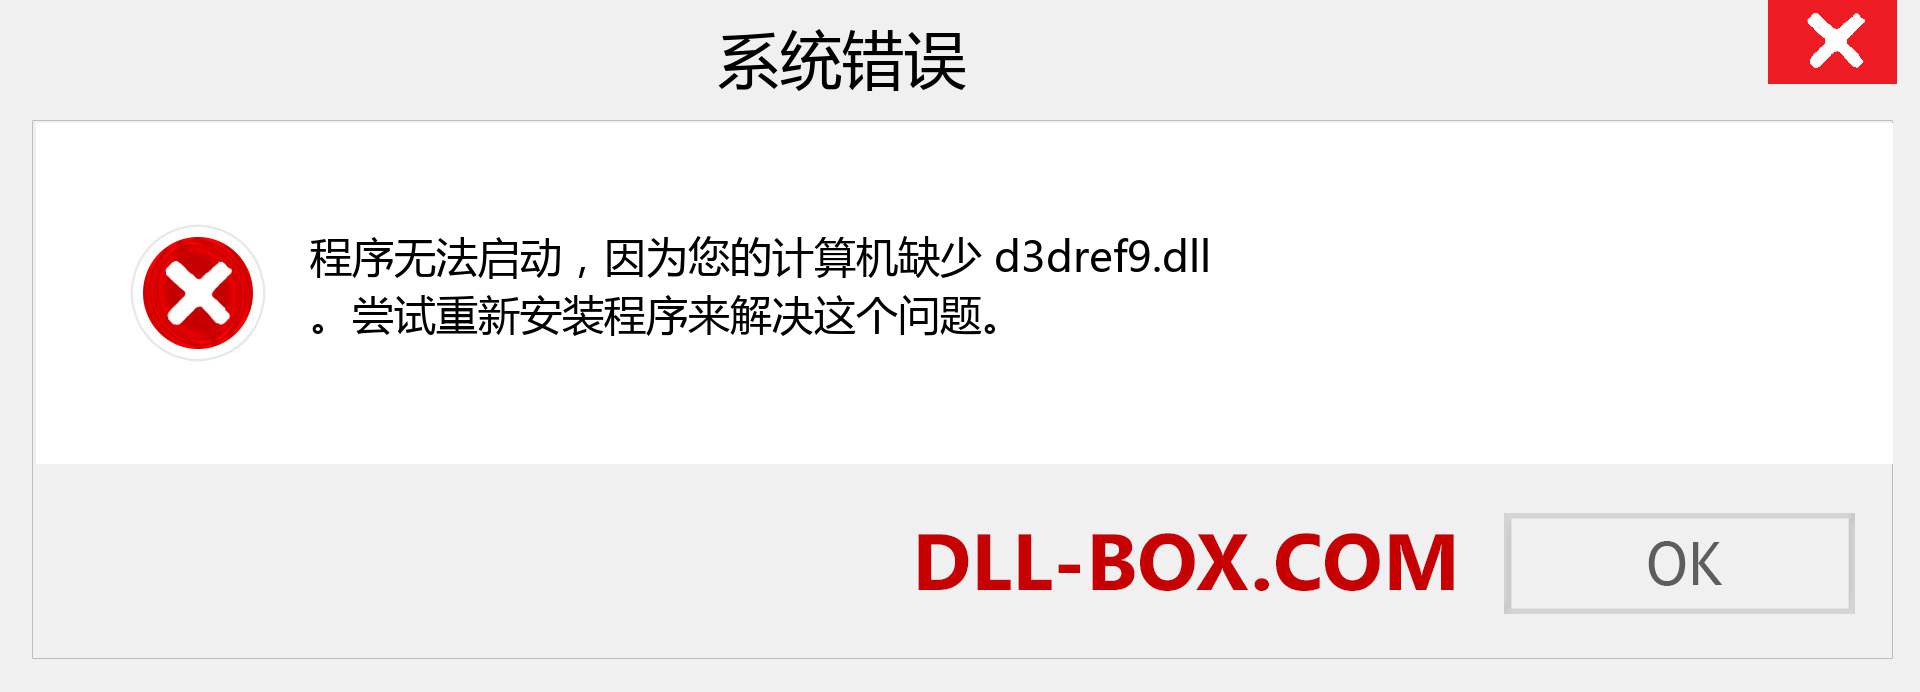 d3dref9.dll 文件丢失？。 适用于 Windows 7、8、10 的下载 - 修复 Windows、照片、图像上的 d3dref9 dll 丢失错误